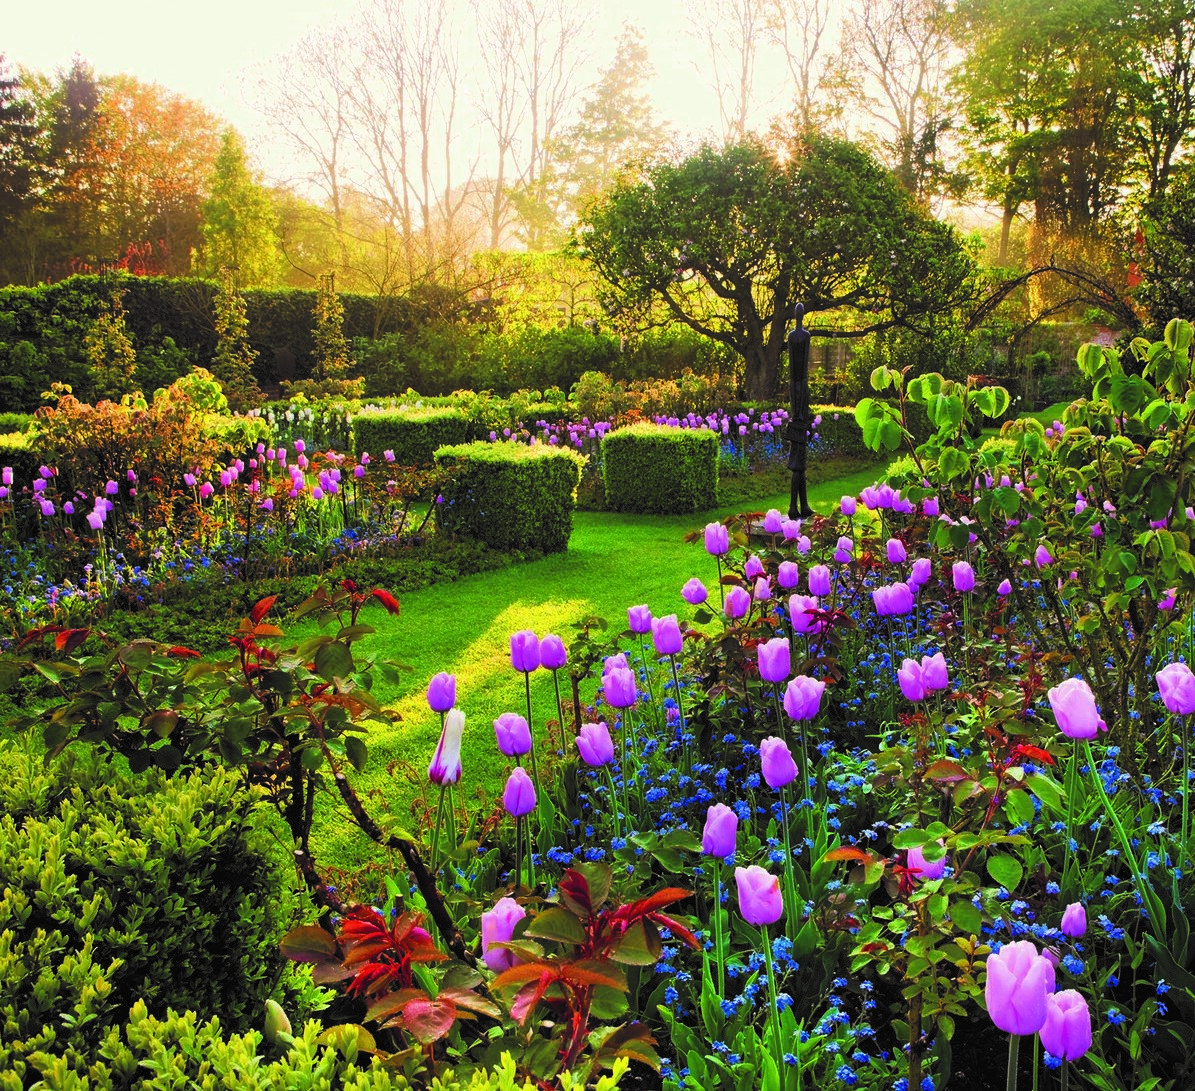 Побываем в саду принца Уэльского в Шотландии, в частном саду лорда Ротшильда на Корфу (остров Греции), в частном саду лорда Хазелтины в Оксфордшире и ещё во многих не менее красивых садах.